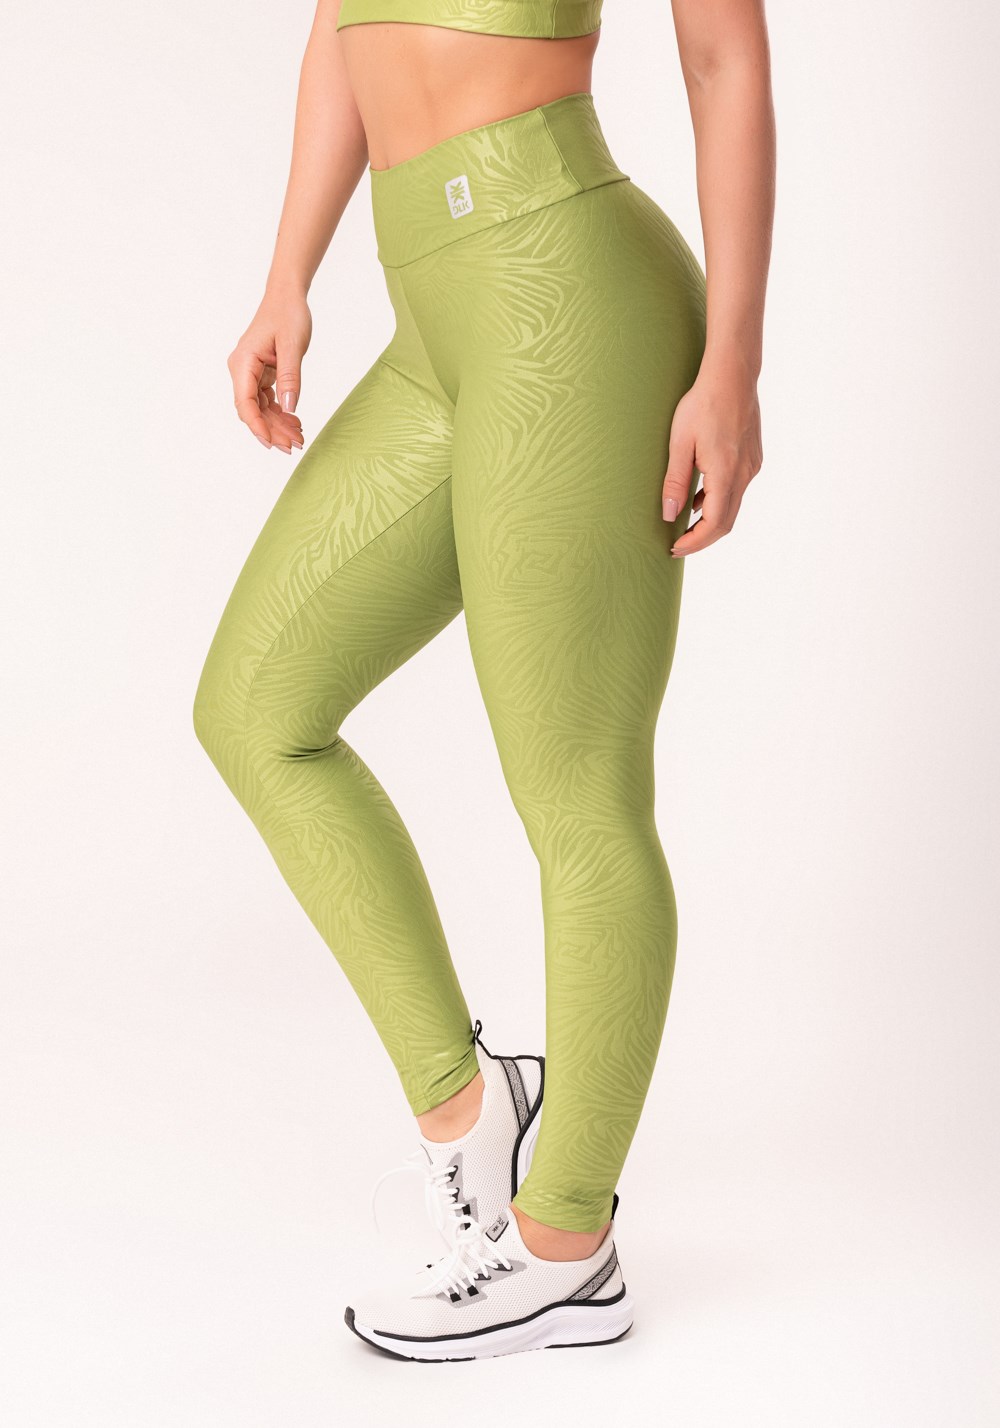 Calça legging shine verde texturizada